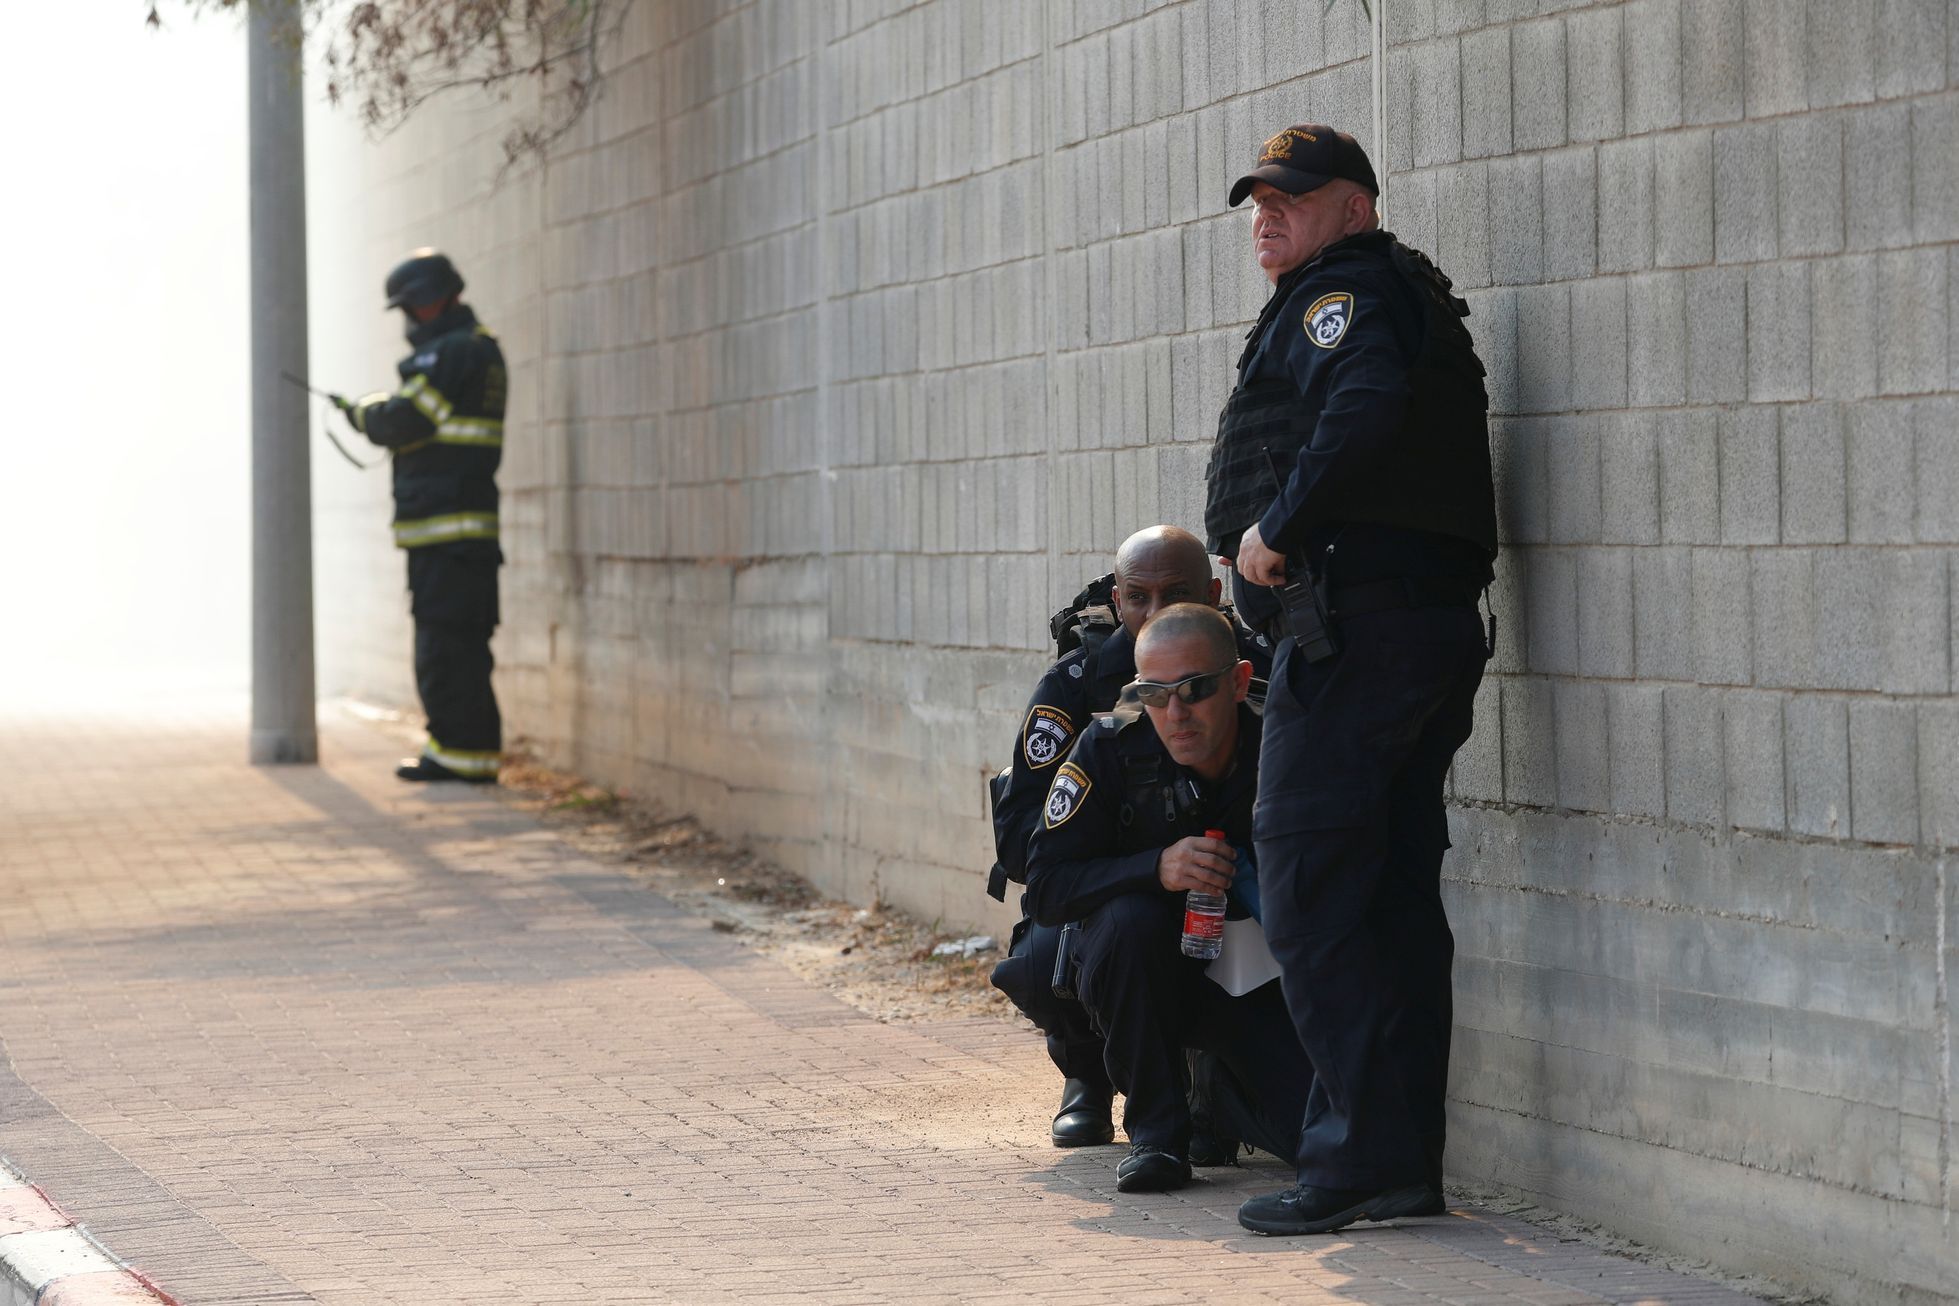 Policie v Izraeli během sirén, které varují před raketami.